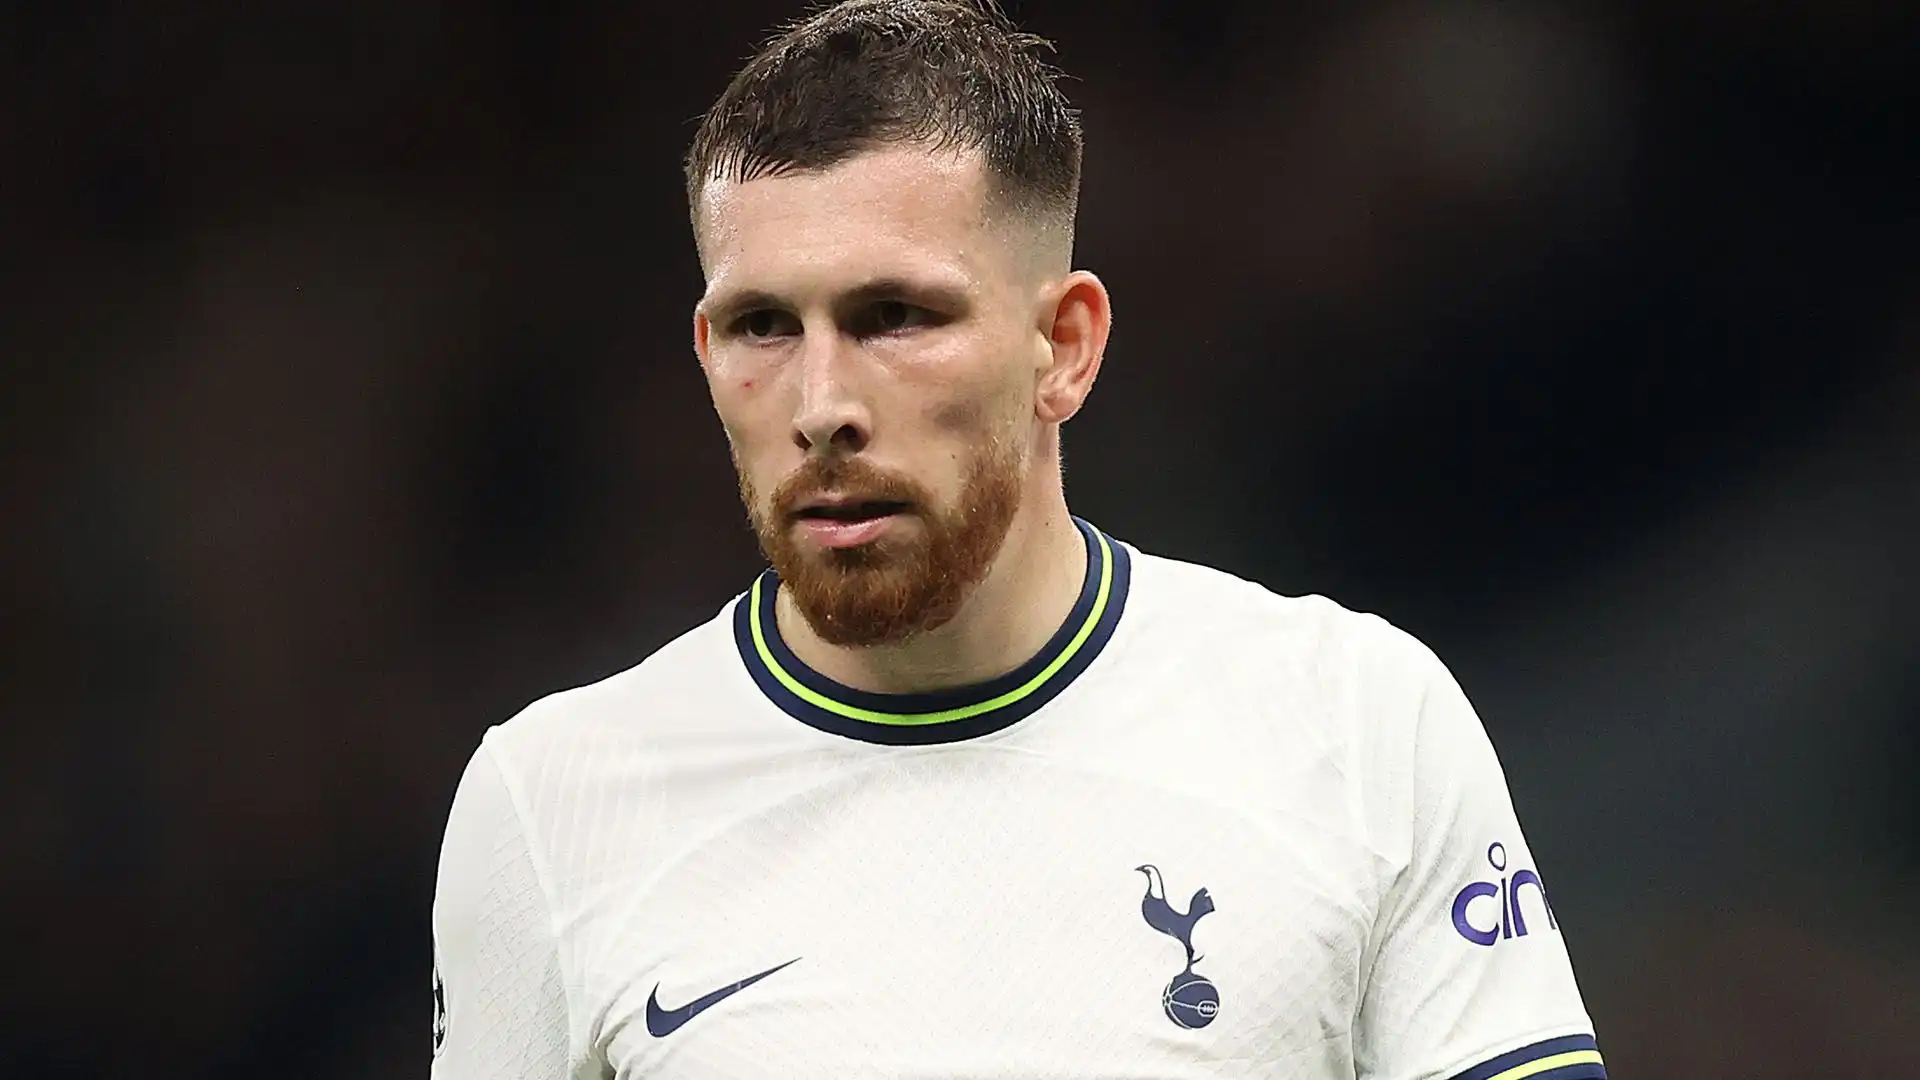 La trattativa è difficile: il Tottenham perderà molti calciatori per la Coppa d'Africa